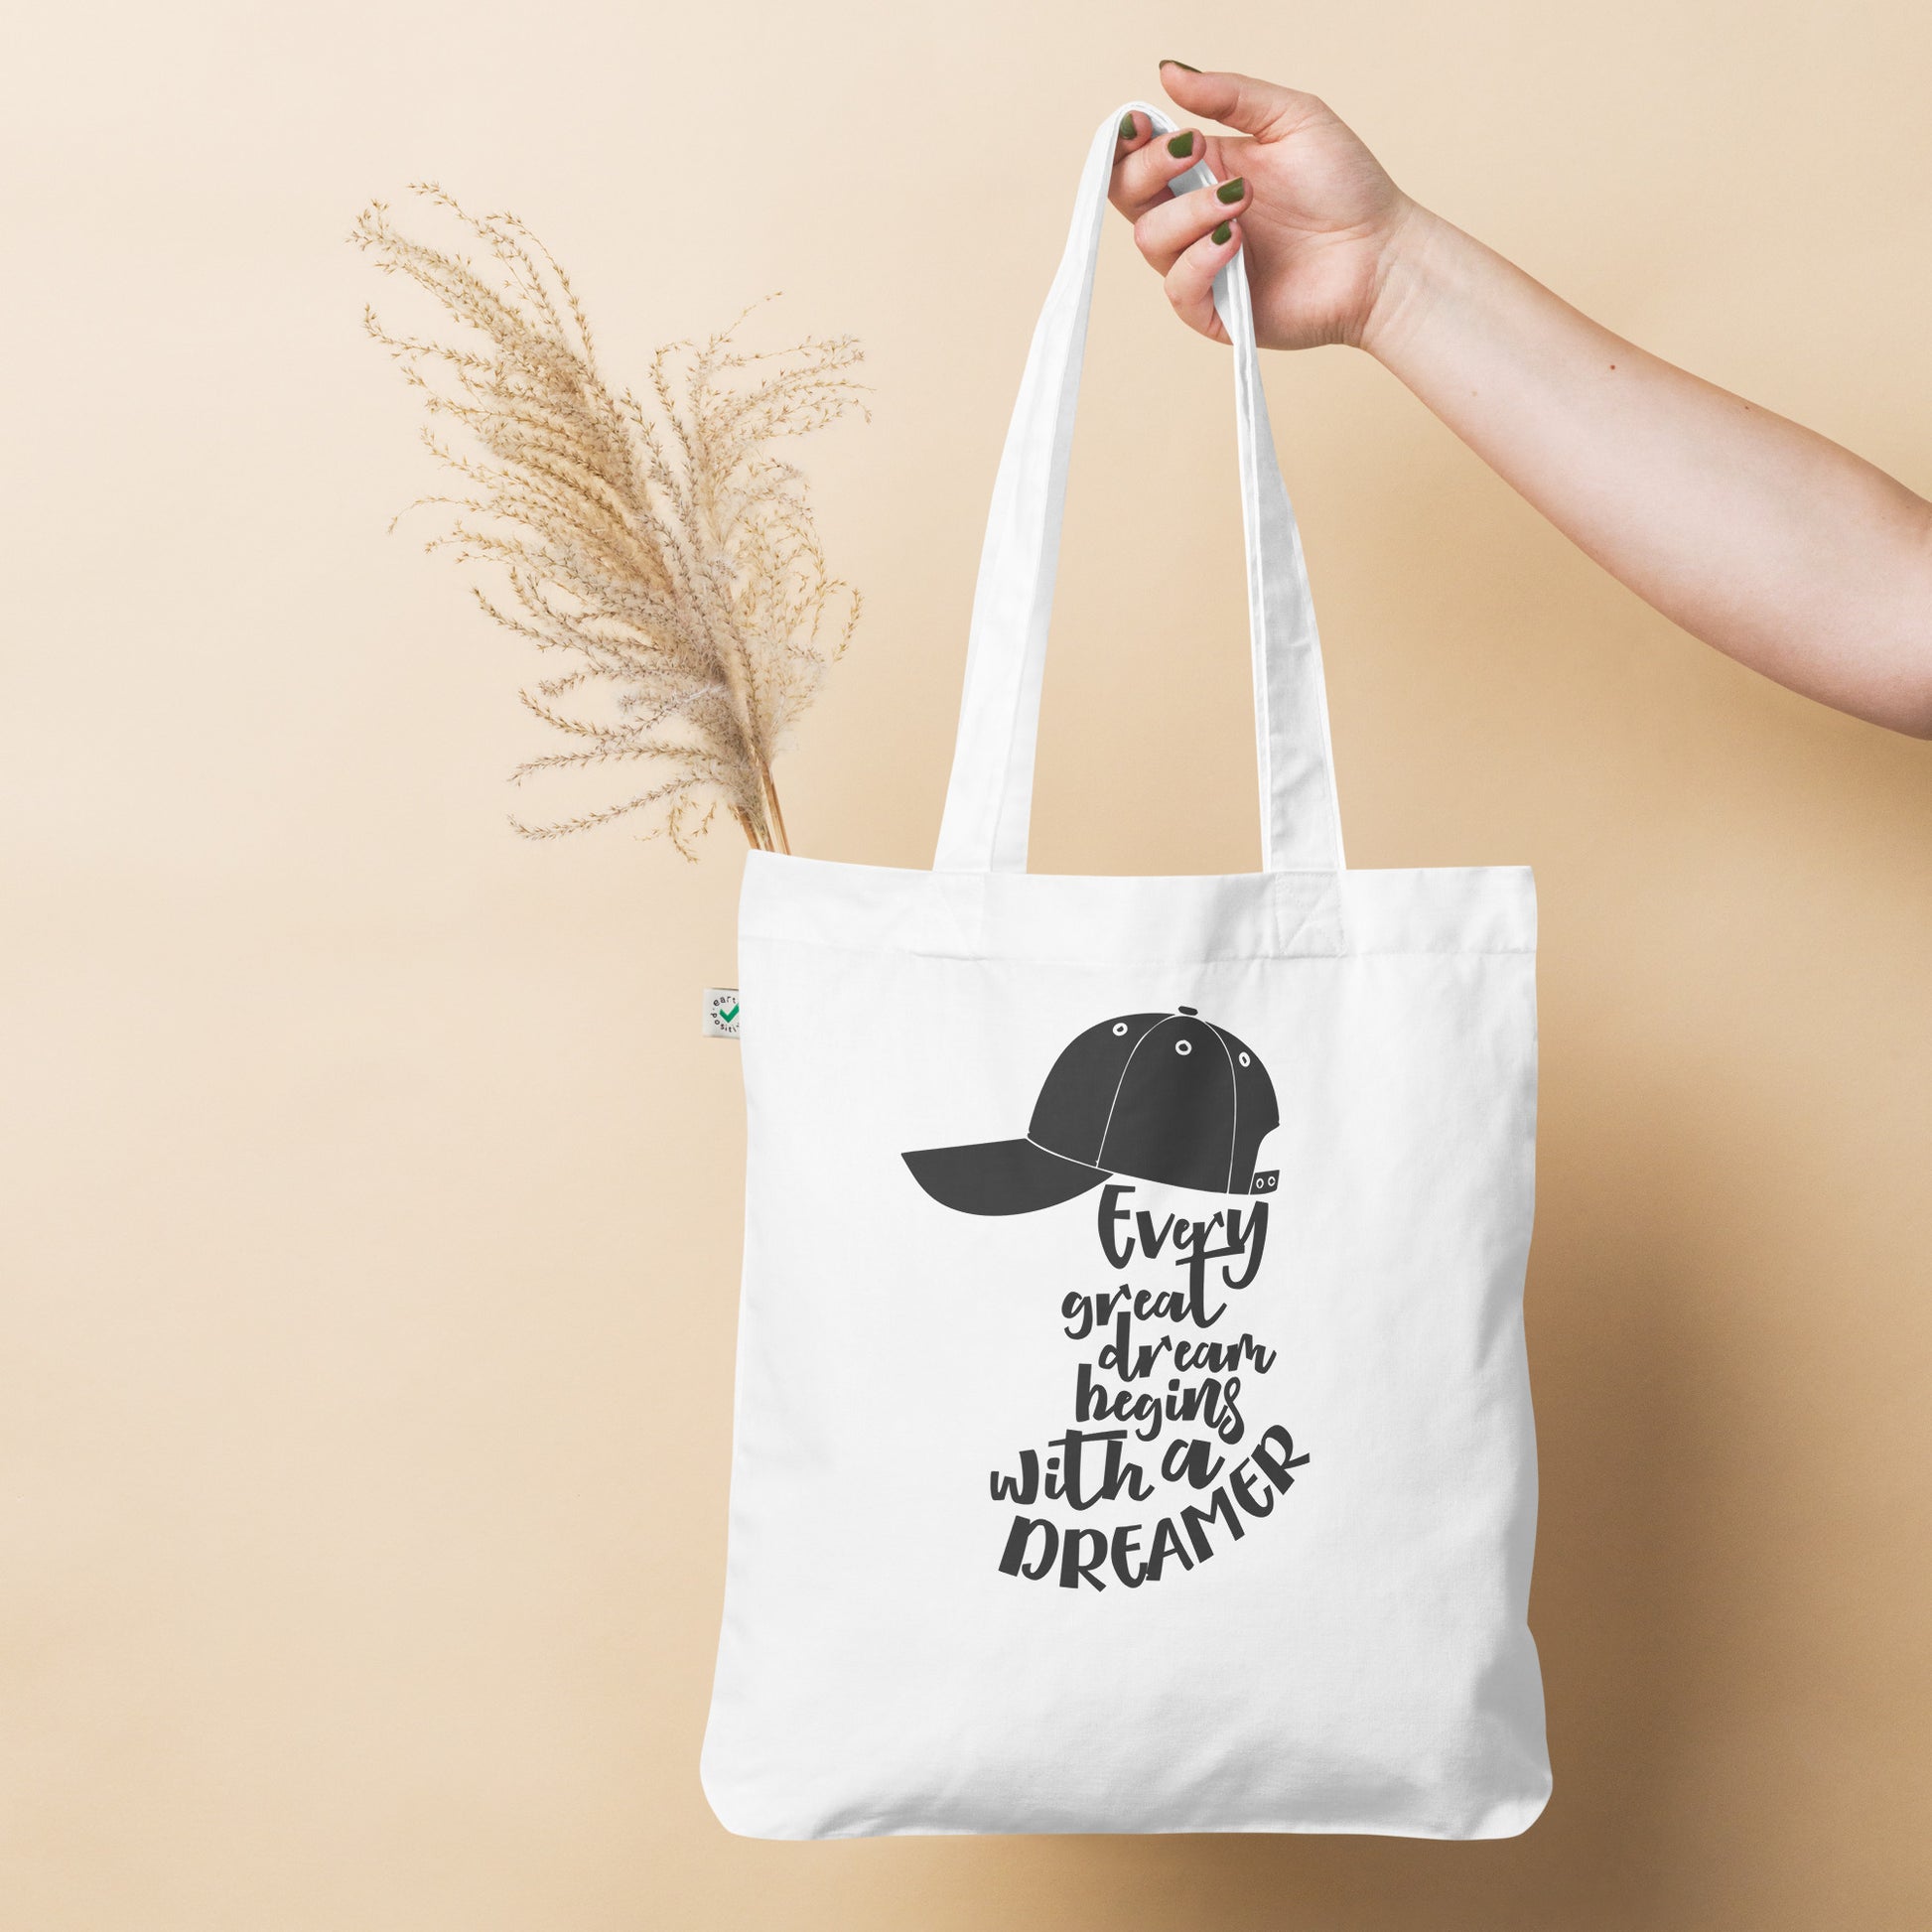 Dreamer - Organic fashion tote bag - HobbyMeFree